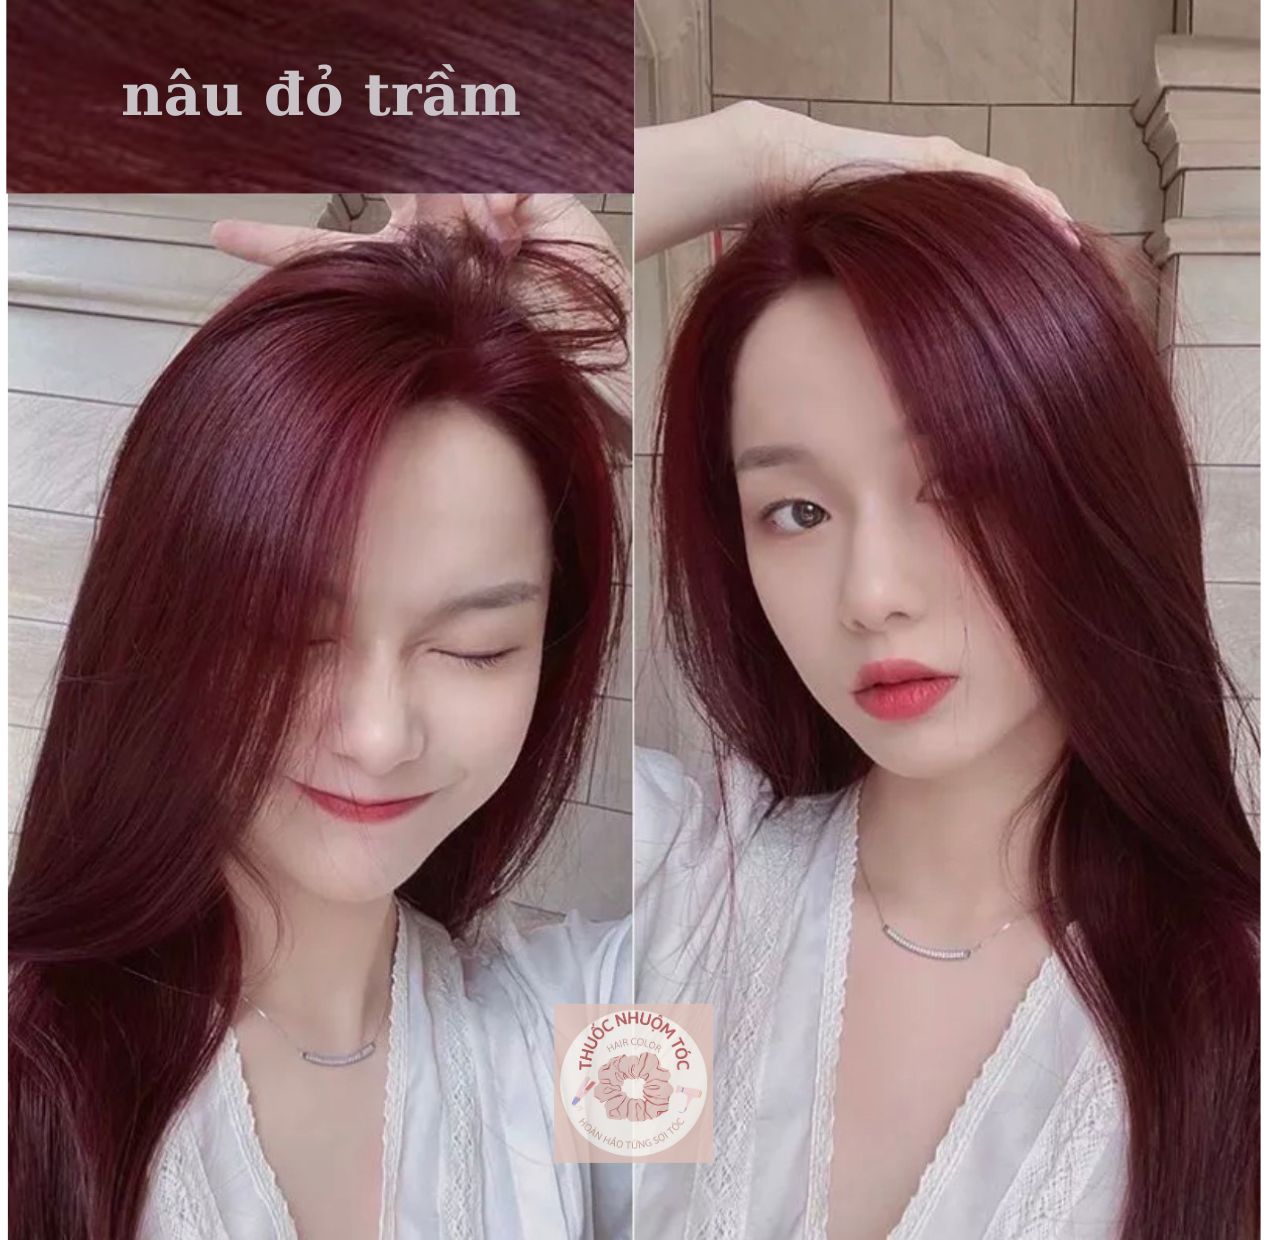 Thuốc nhuộm tóc màu nâu đỏ trầm - Kèm trợ nhuộm Oxy 100ml | Shopee Việt Nam